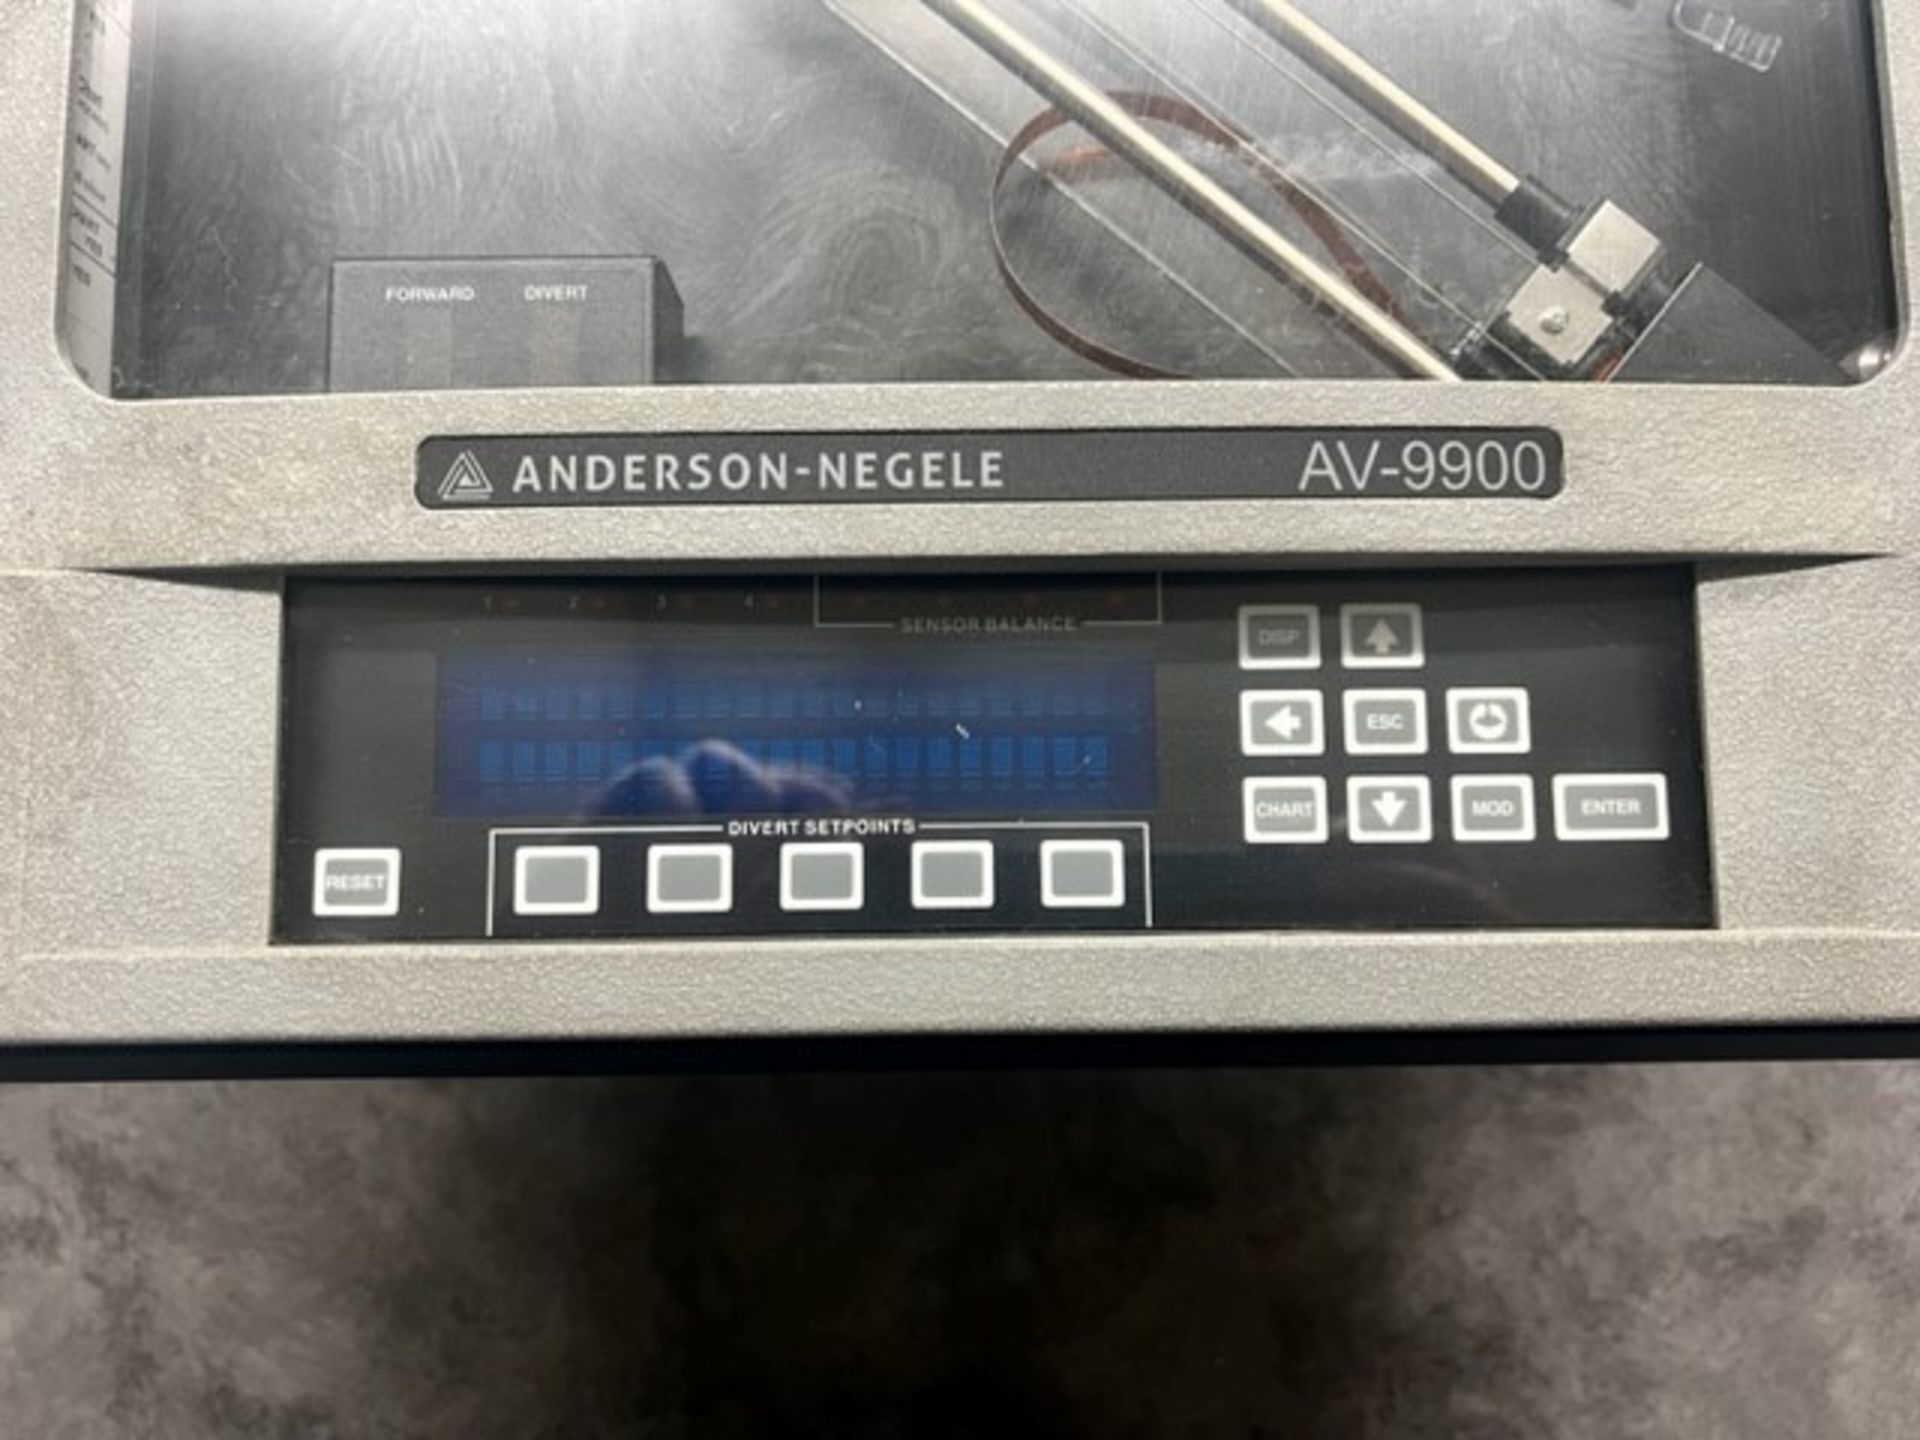 Anderson-Negele AV-9900 Chart Recorder, Model 99010-000-001-33, S/N 2000349 (Load Fee $50) ( - Image 3 of 4